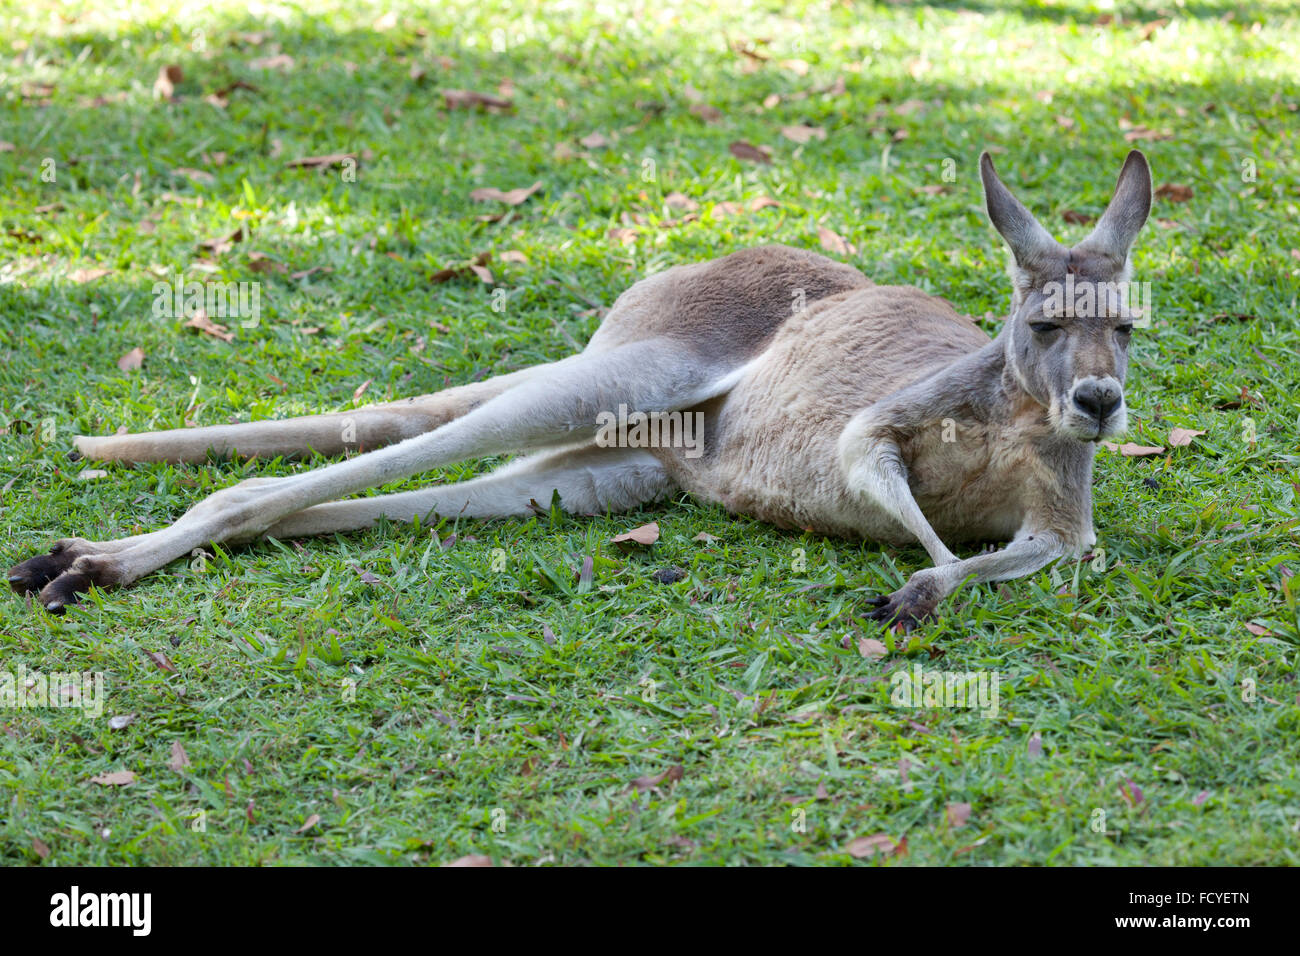 Kangourou rouge allongé dans l'herbe, Queensland, Australie Banque D'Images